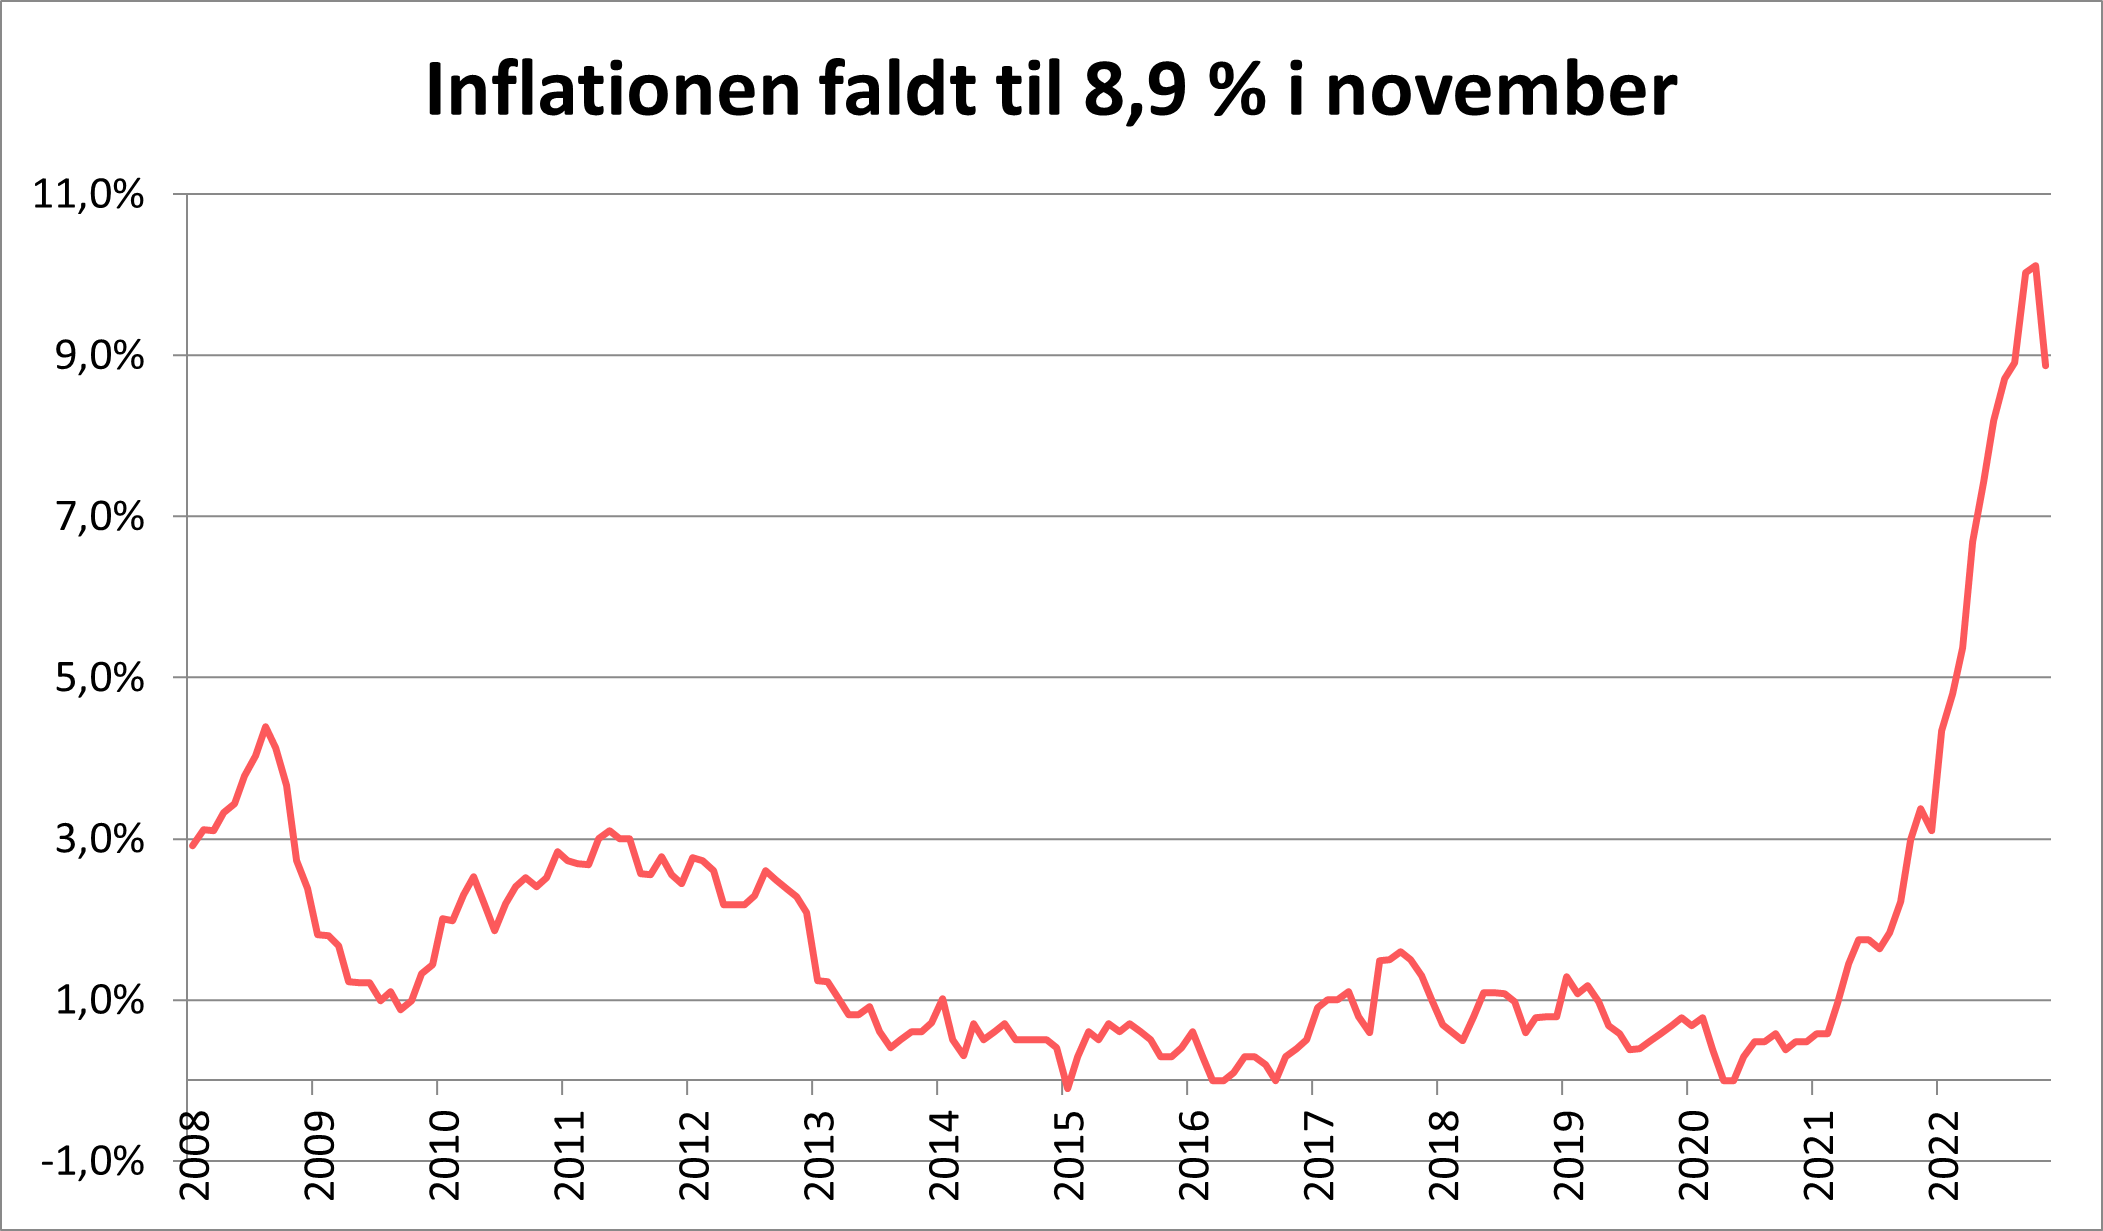 Inflationen faldt i november til 8,9%